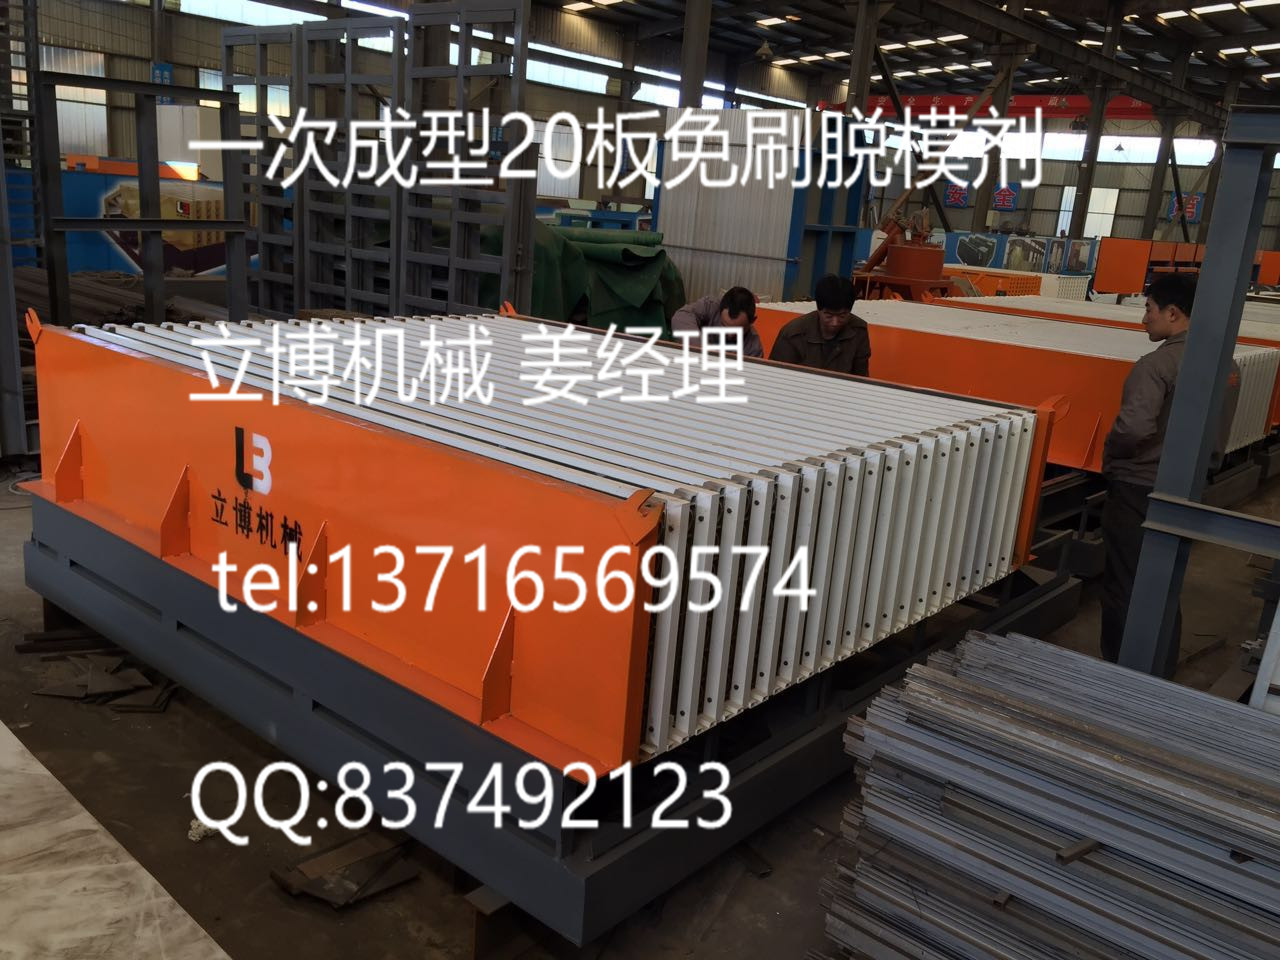 供应用于生产墙板的墙板机首选北京立博机械图片